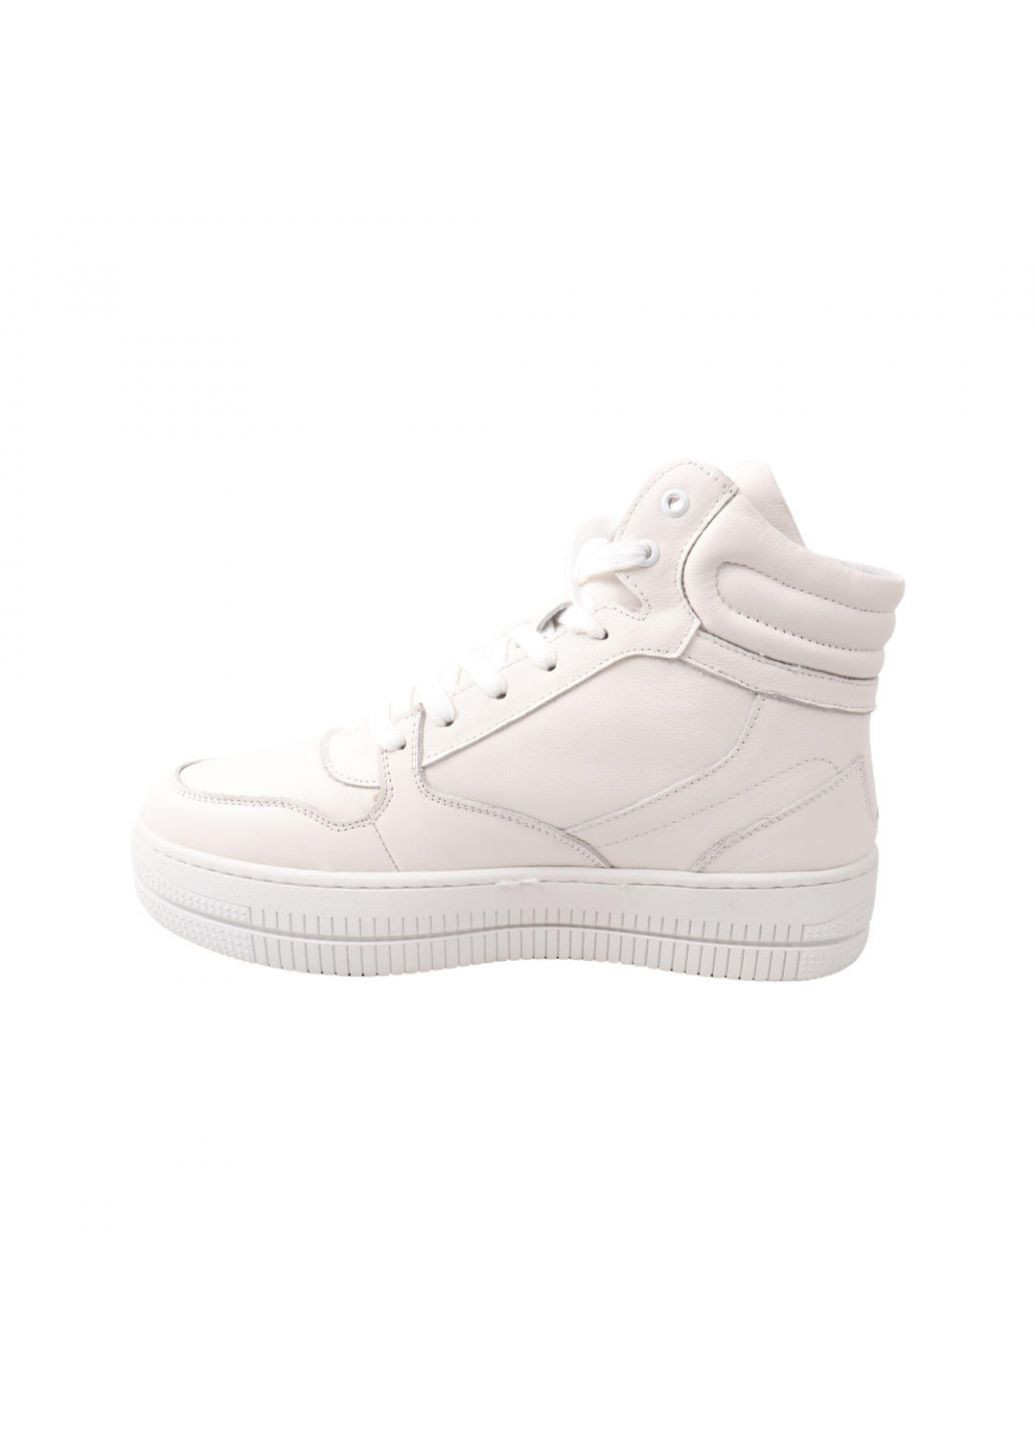 Белые ботинки мужские белые натуральная кожа Lifexpert